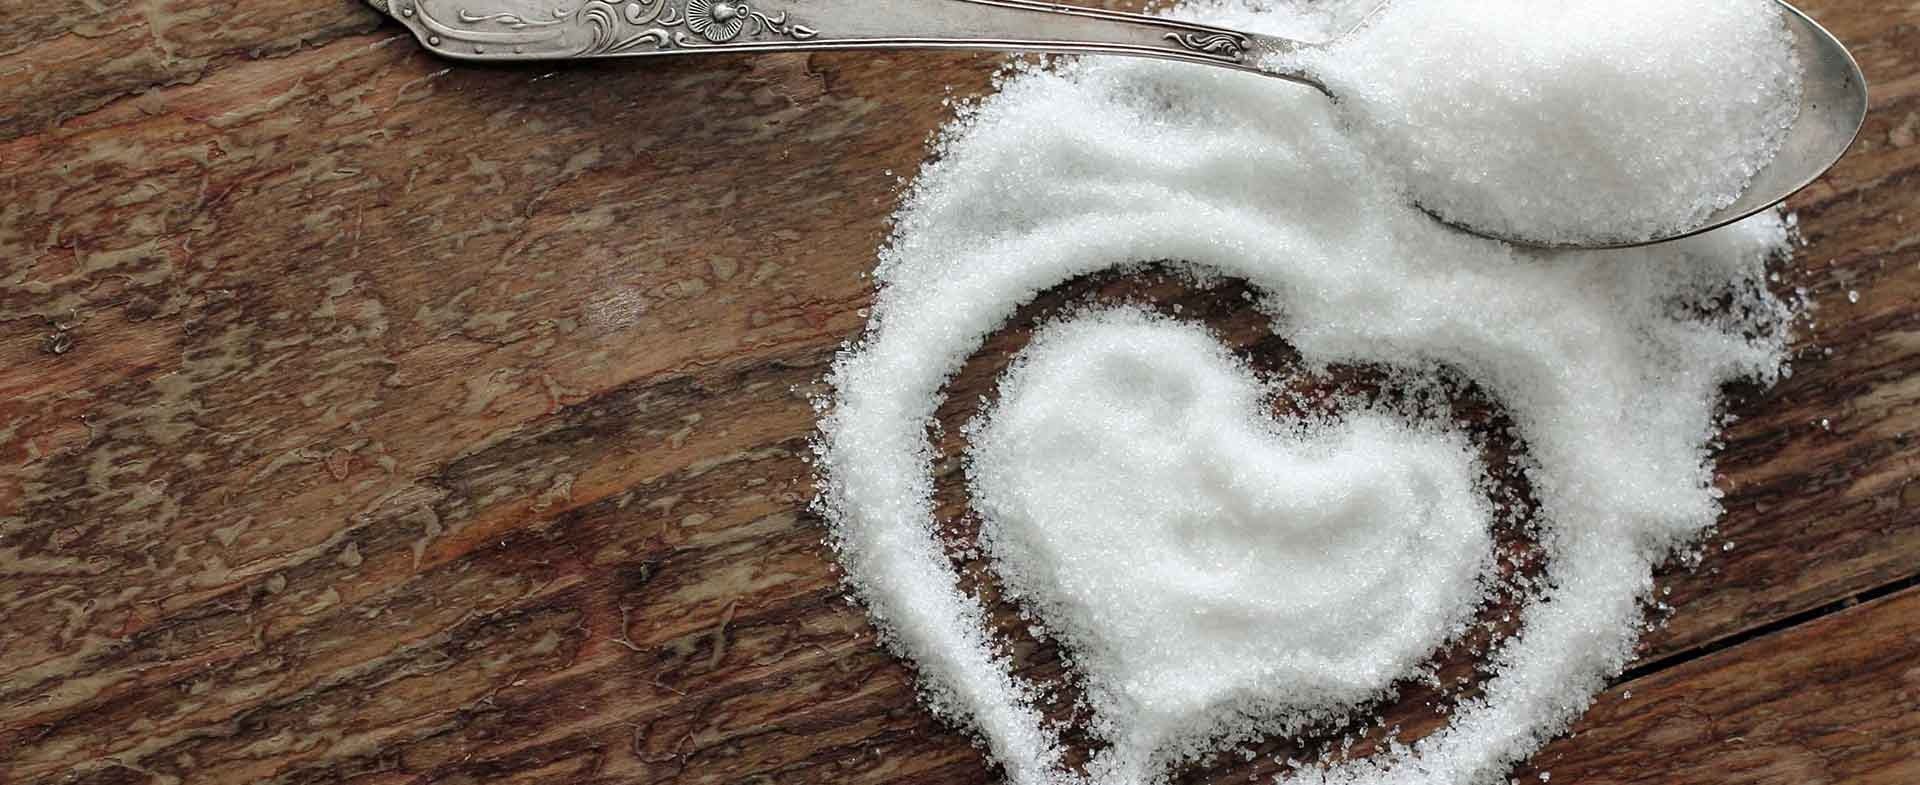 Sugar can cause heart disease